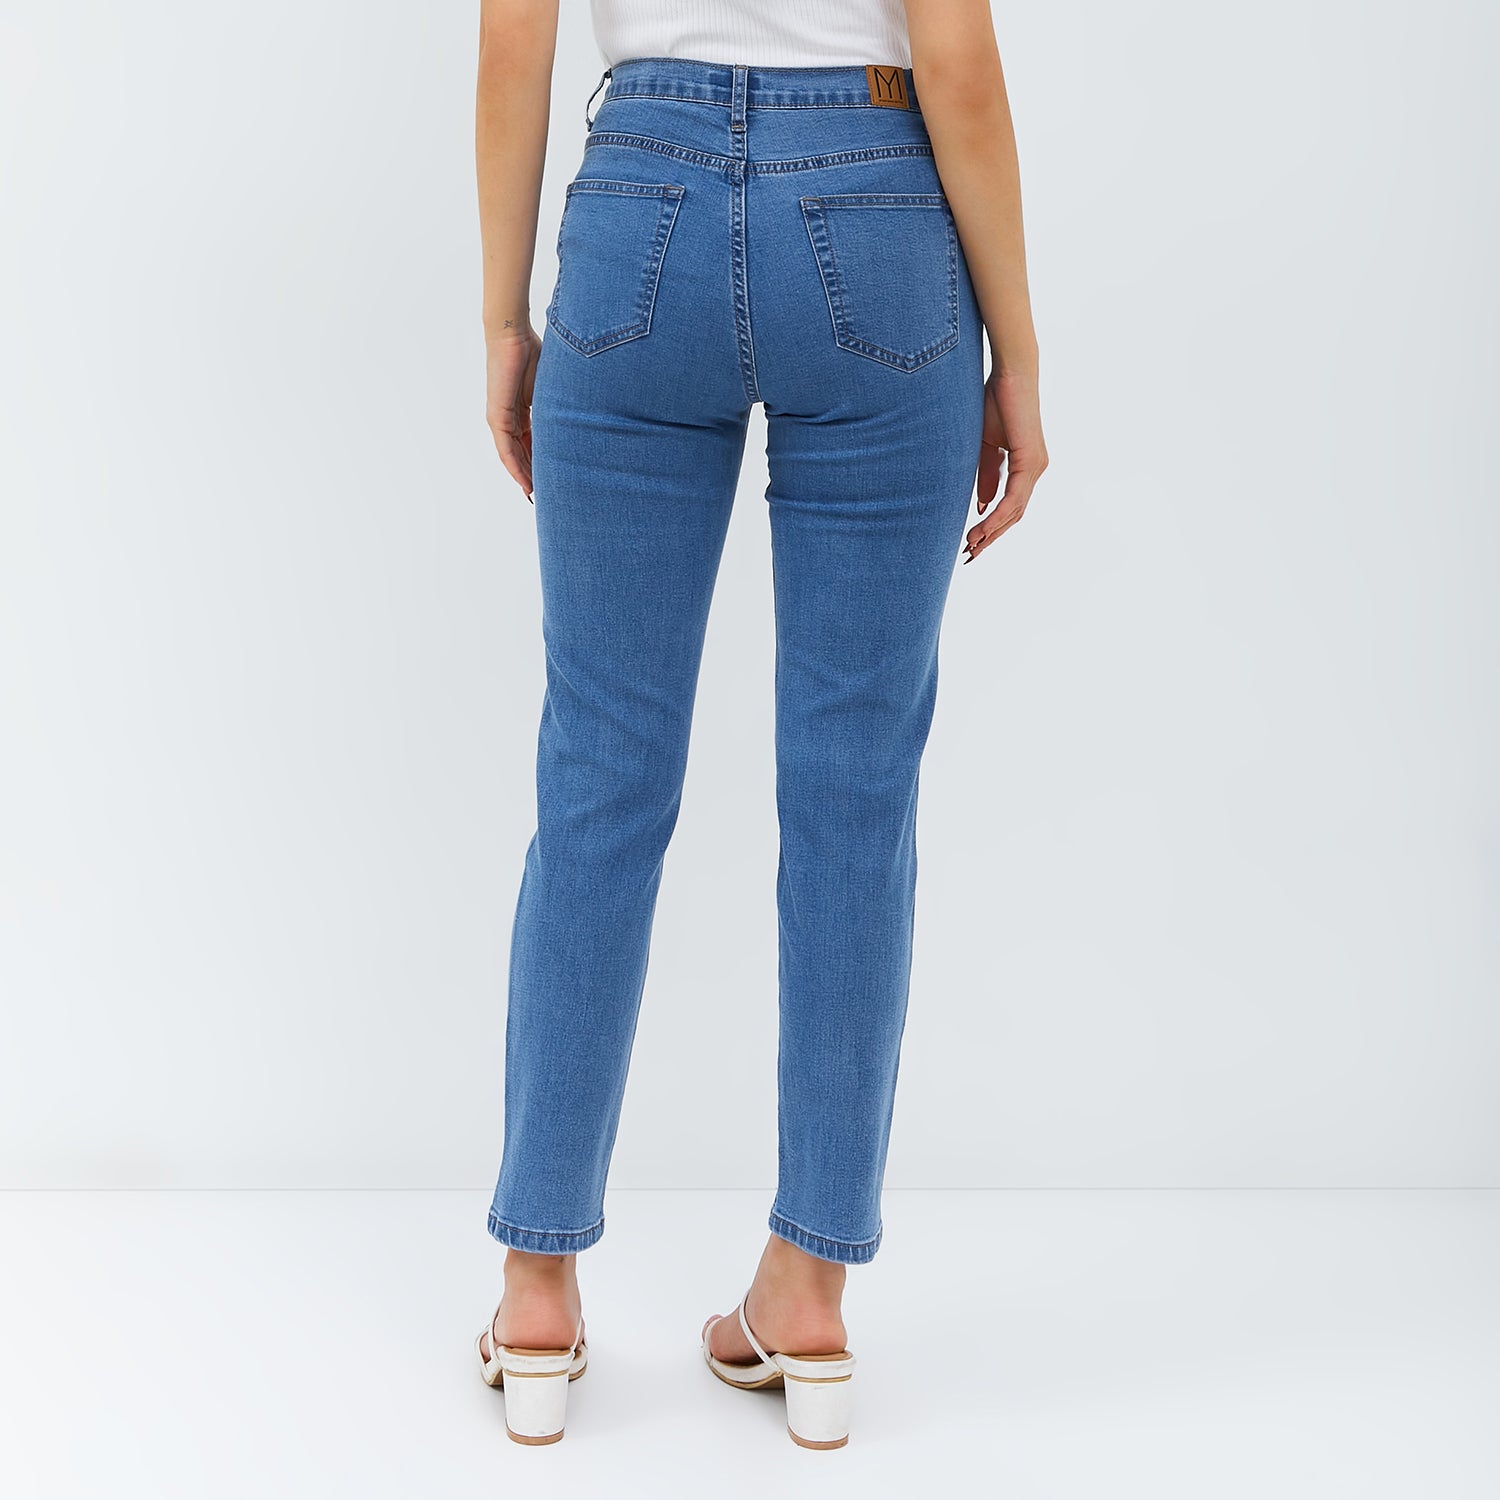 Jane Slim Women Jeans [MYMJ 801]